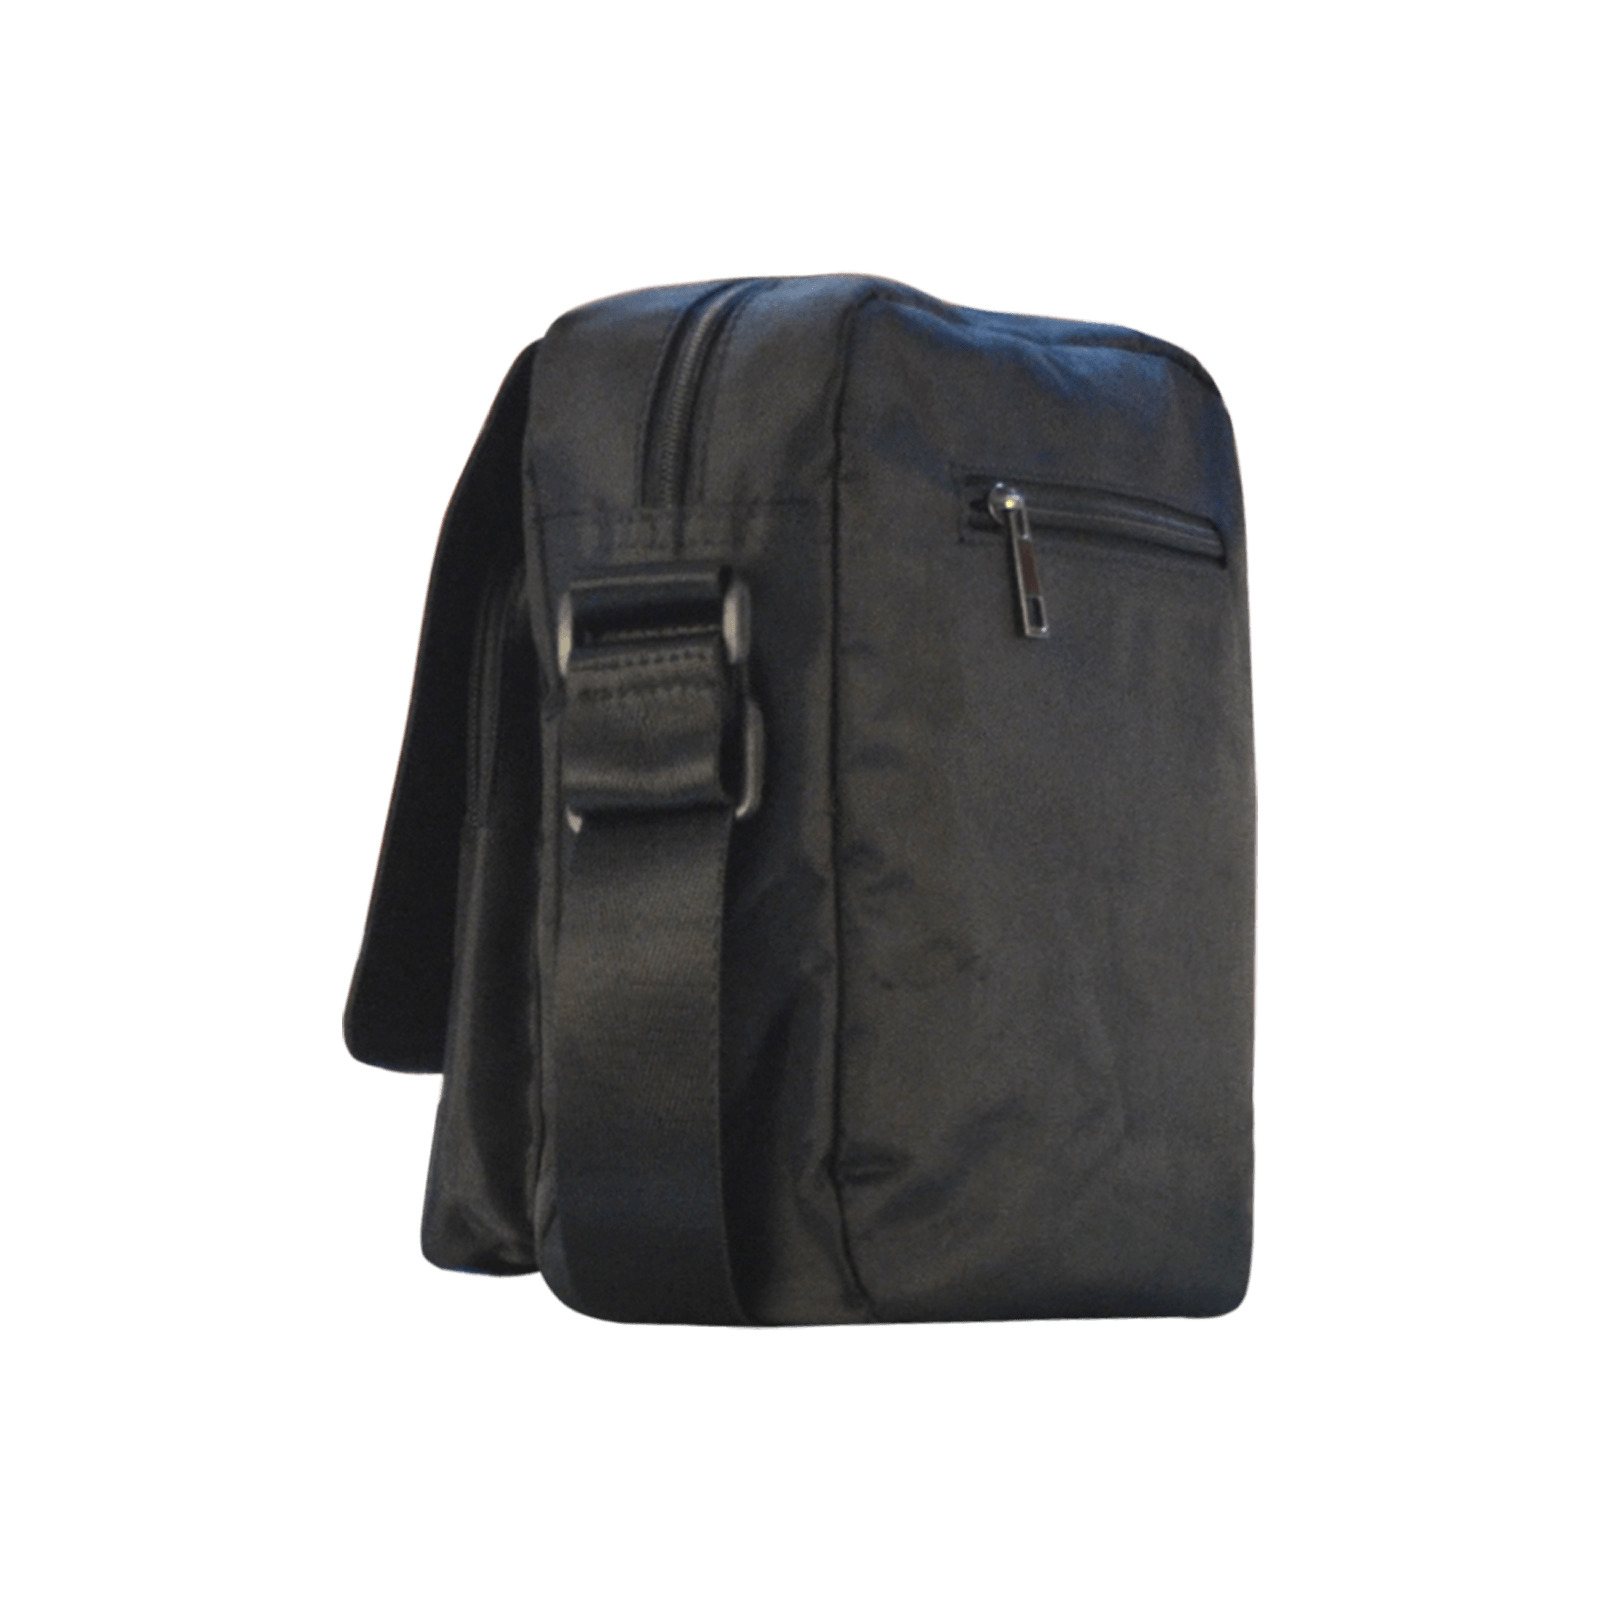 PHALANGES (SKELEBAG) Crossbody Nylon Bags (Model 1633)